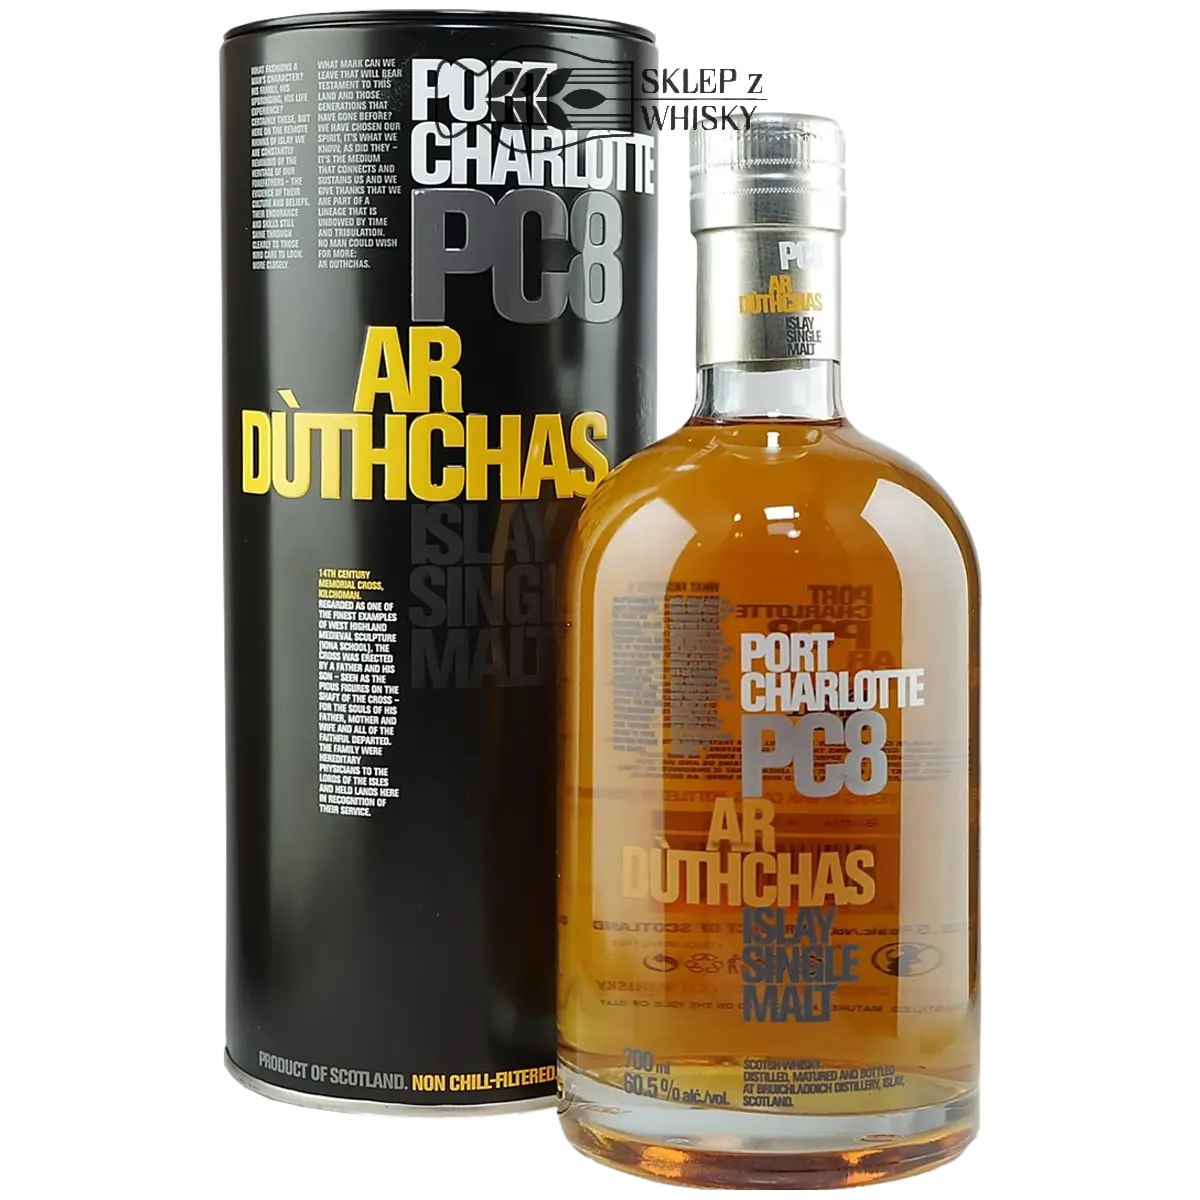 Port Charlotte PC8 Ar Duthchas - szkocka whisky single malt z regionu Islay, 700 ml, w pudełku